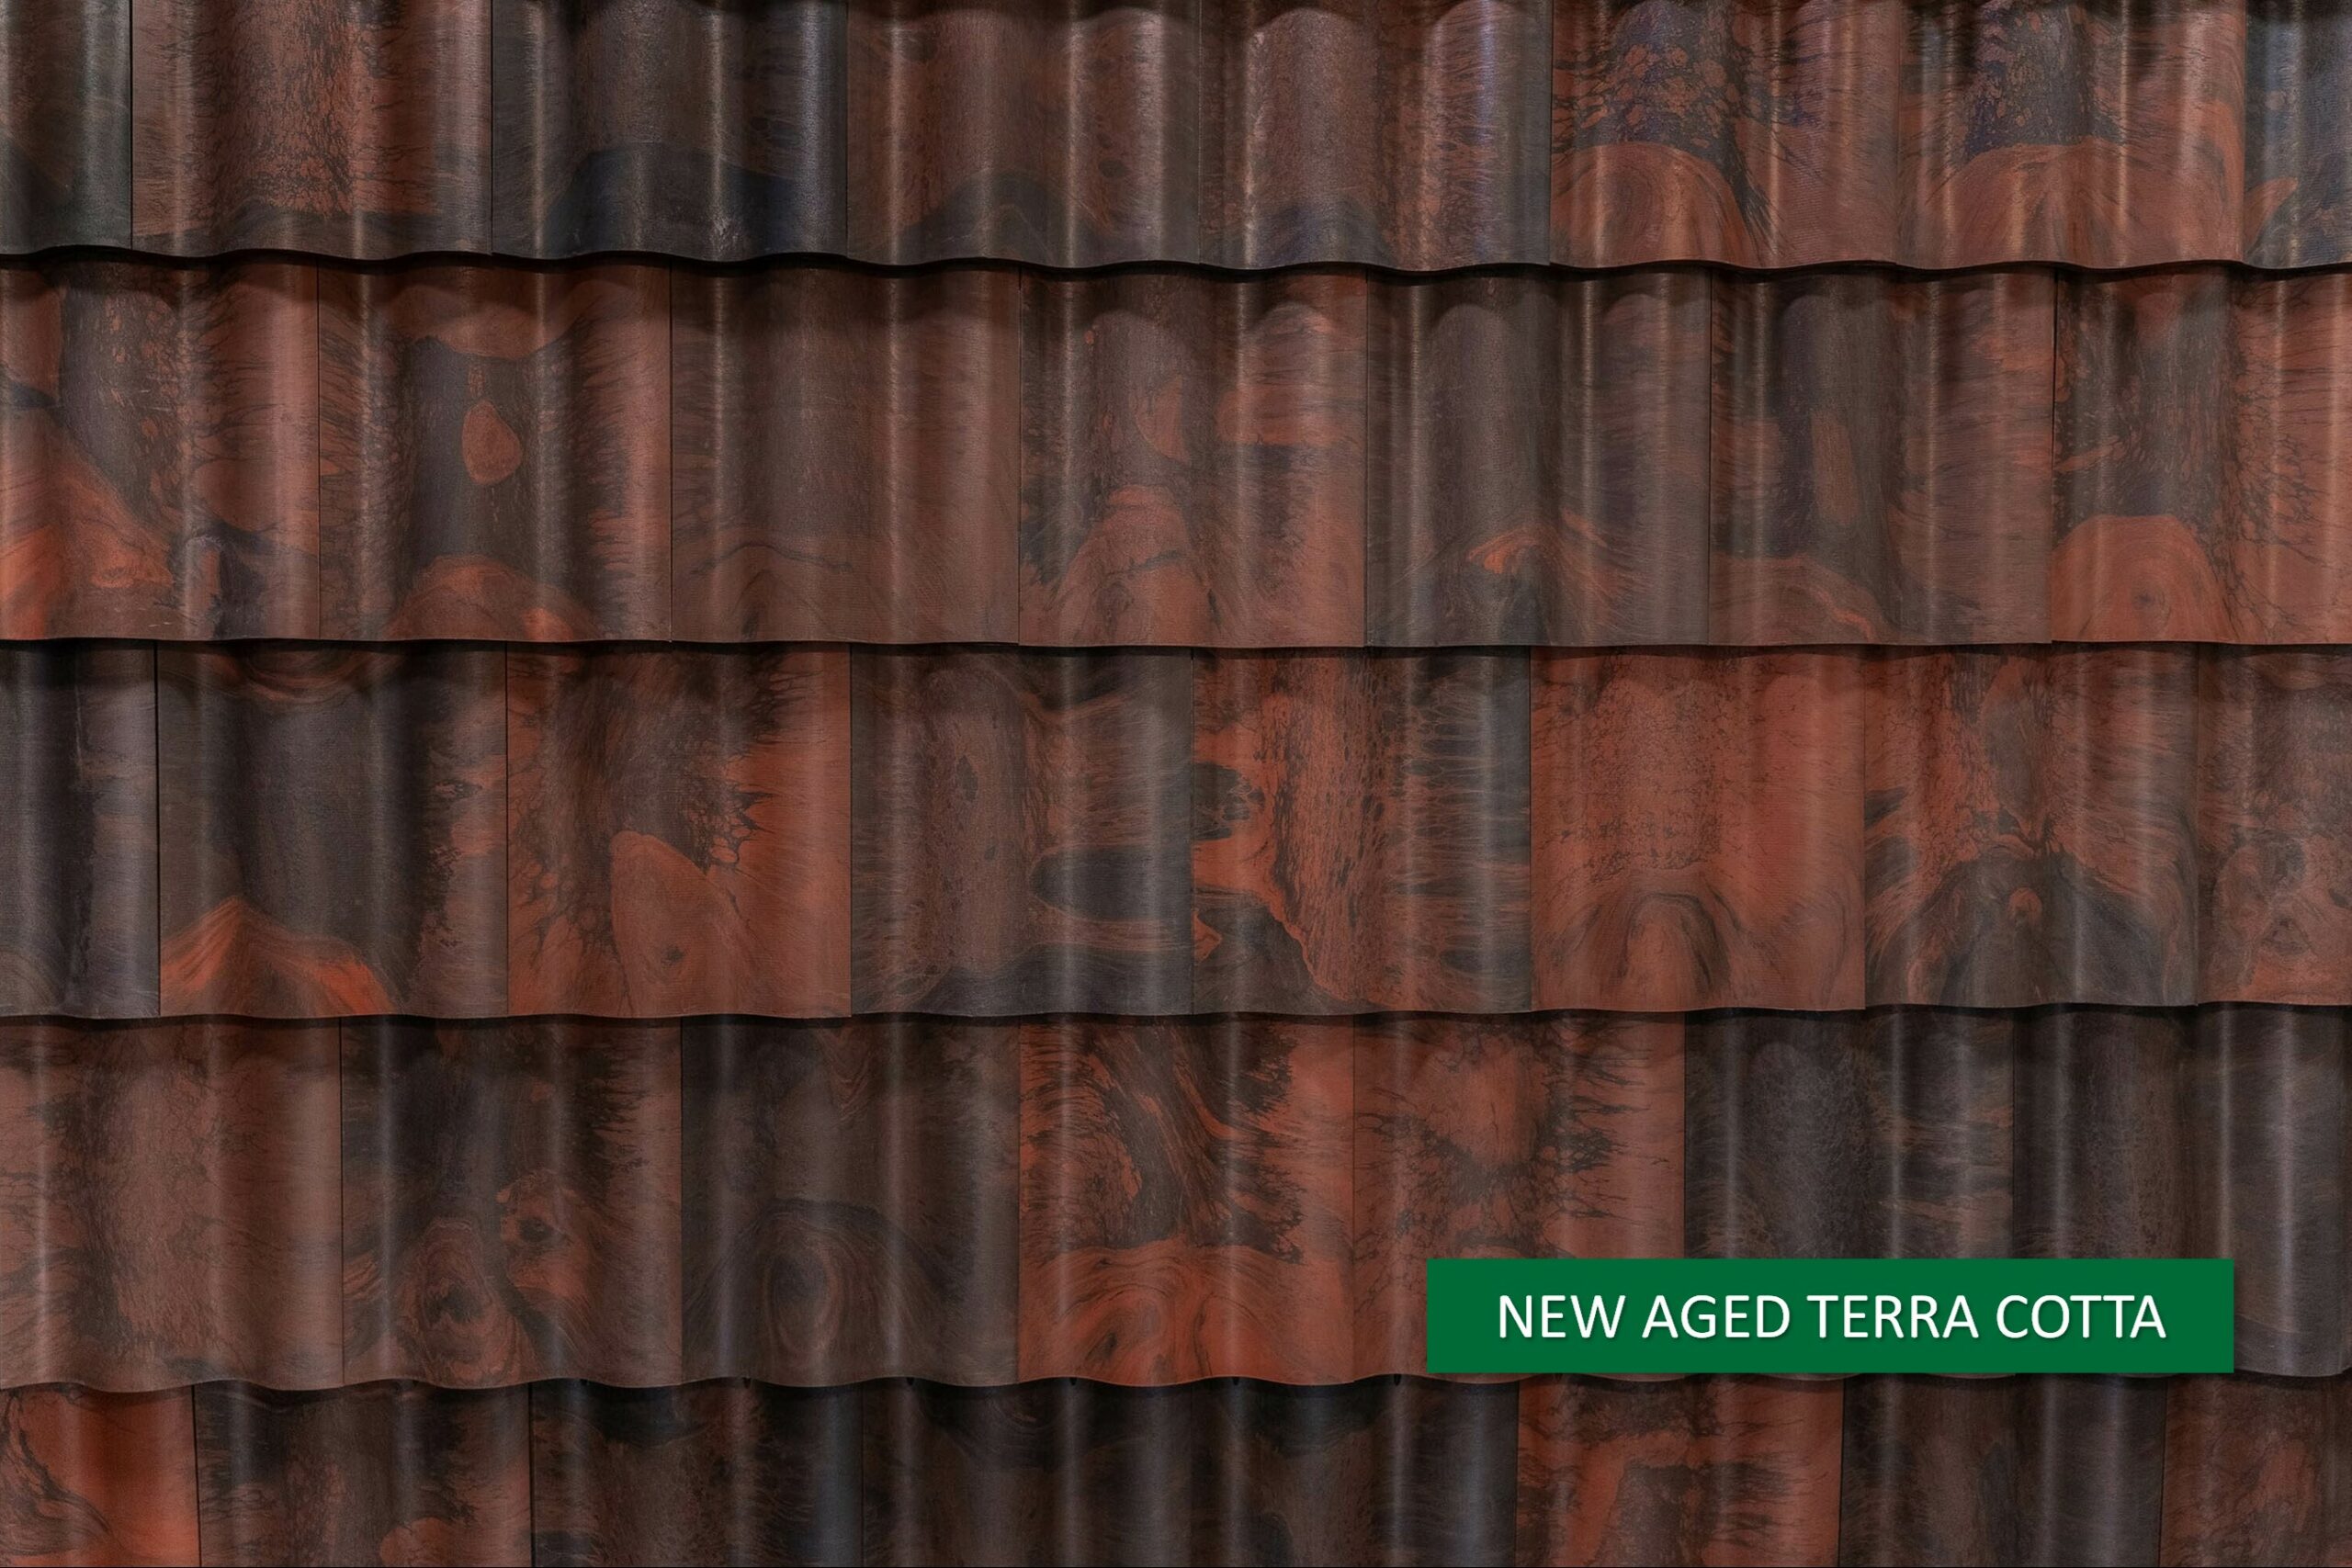 Brava Composite Spanish Barrel Tile new aged terra cotta